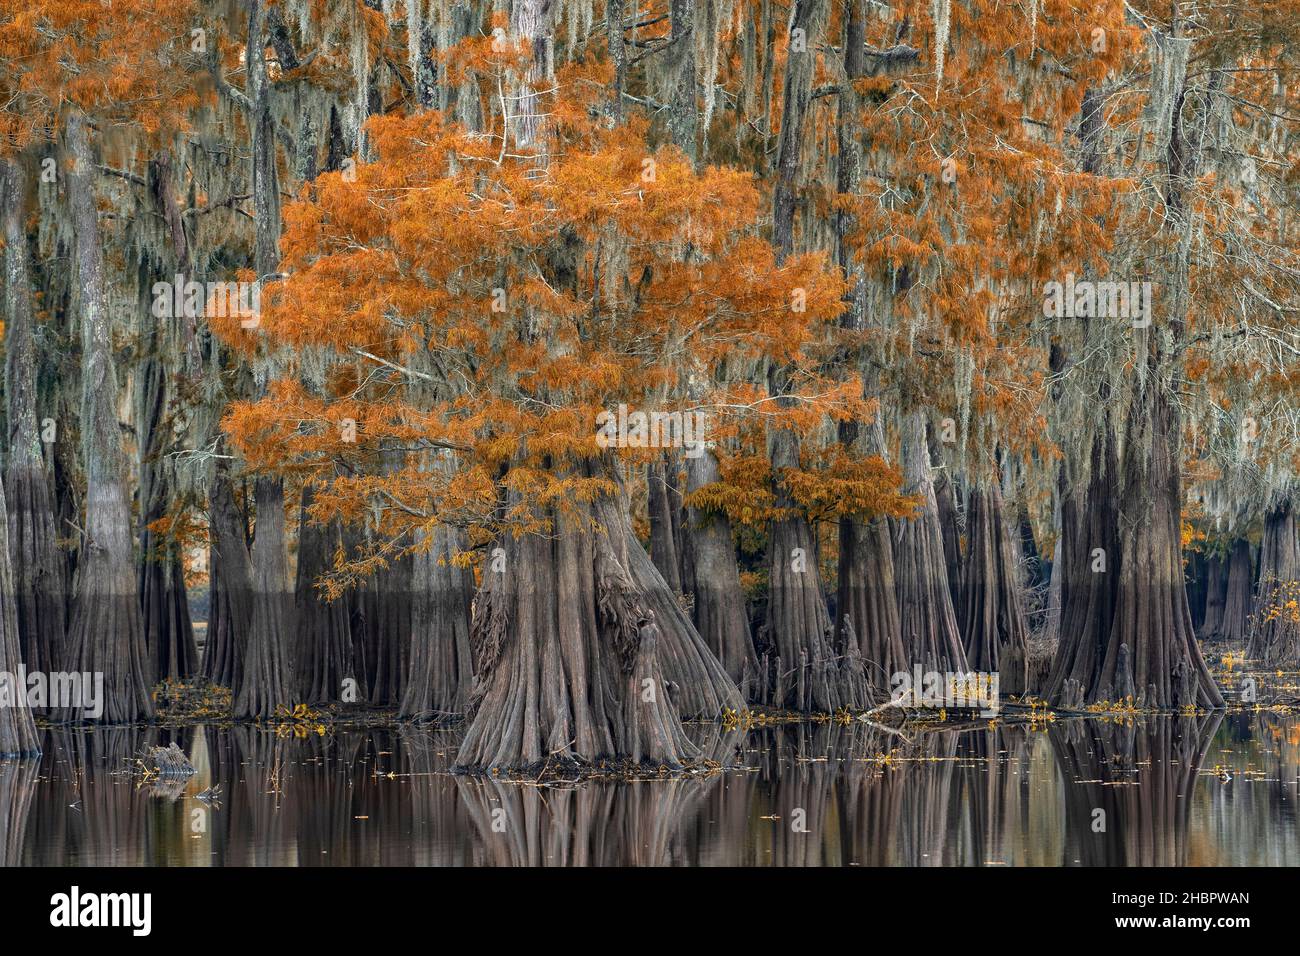 USA, South, Louisiana, Atchafalaya basin, Bald Cypress swamp, *** Local Caption ***  USA, South, Louisiana, Atchafalaya basin, Bald Cypress swamp, nat Stock Photo